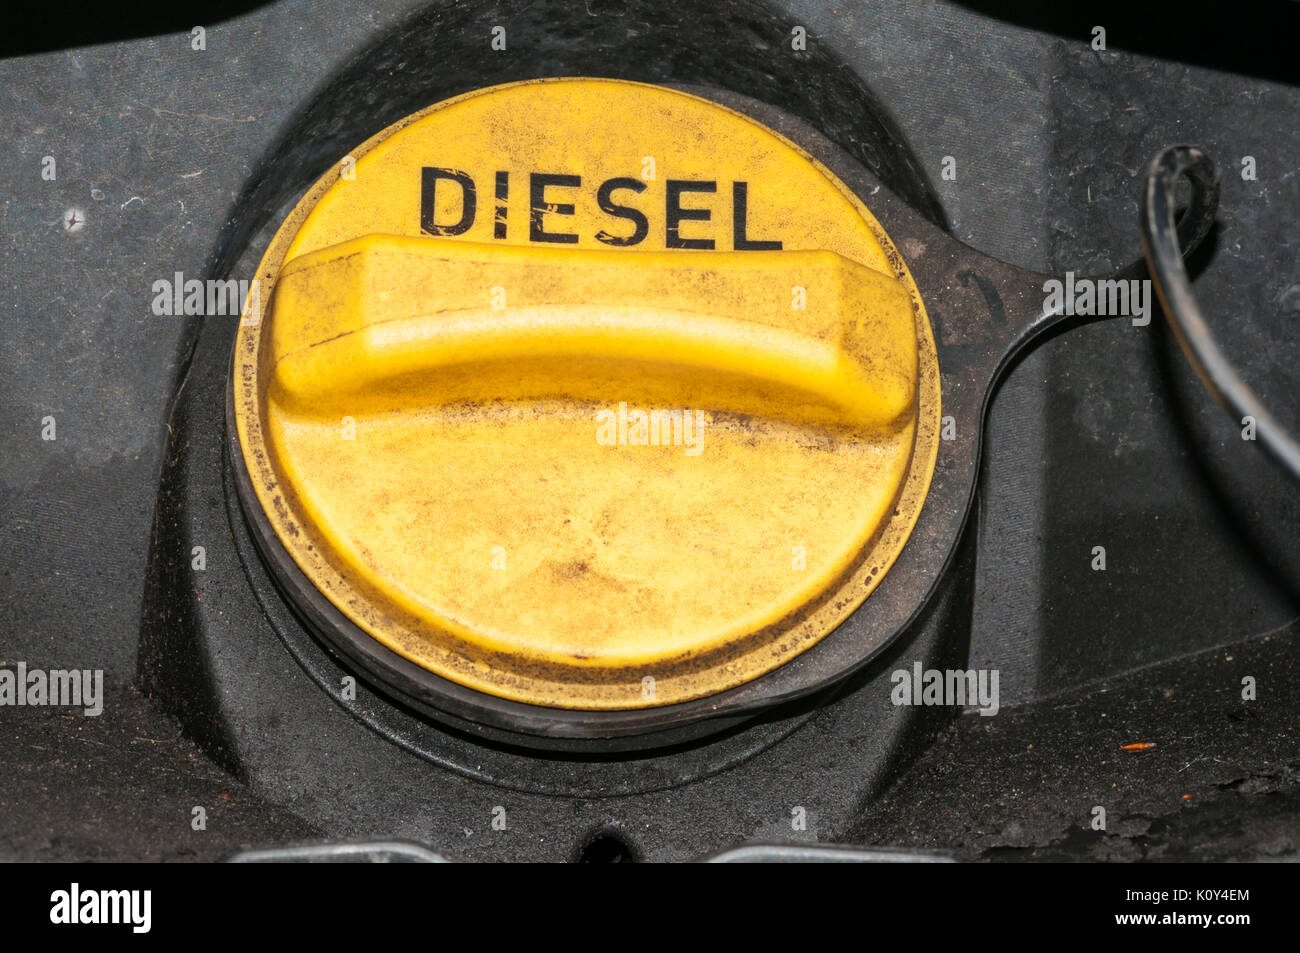 https://c8.alamy.com/compde/k0y4em/der-unordentlichen-tankdeckel-eines-diesel-getankt-land-rover-siehe-k25-x3f-fur-schwarzweiss-version-k0y4em.jpg